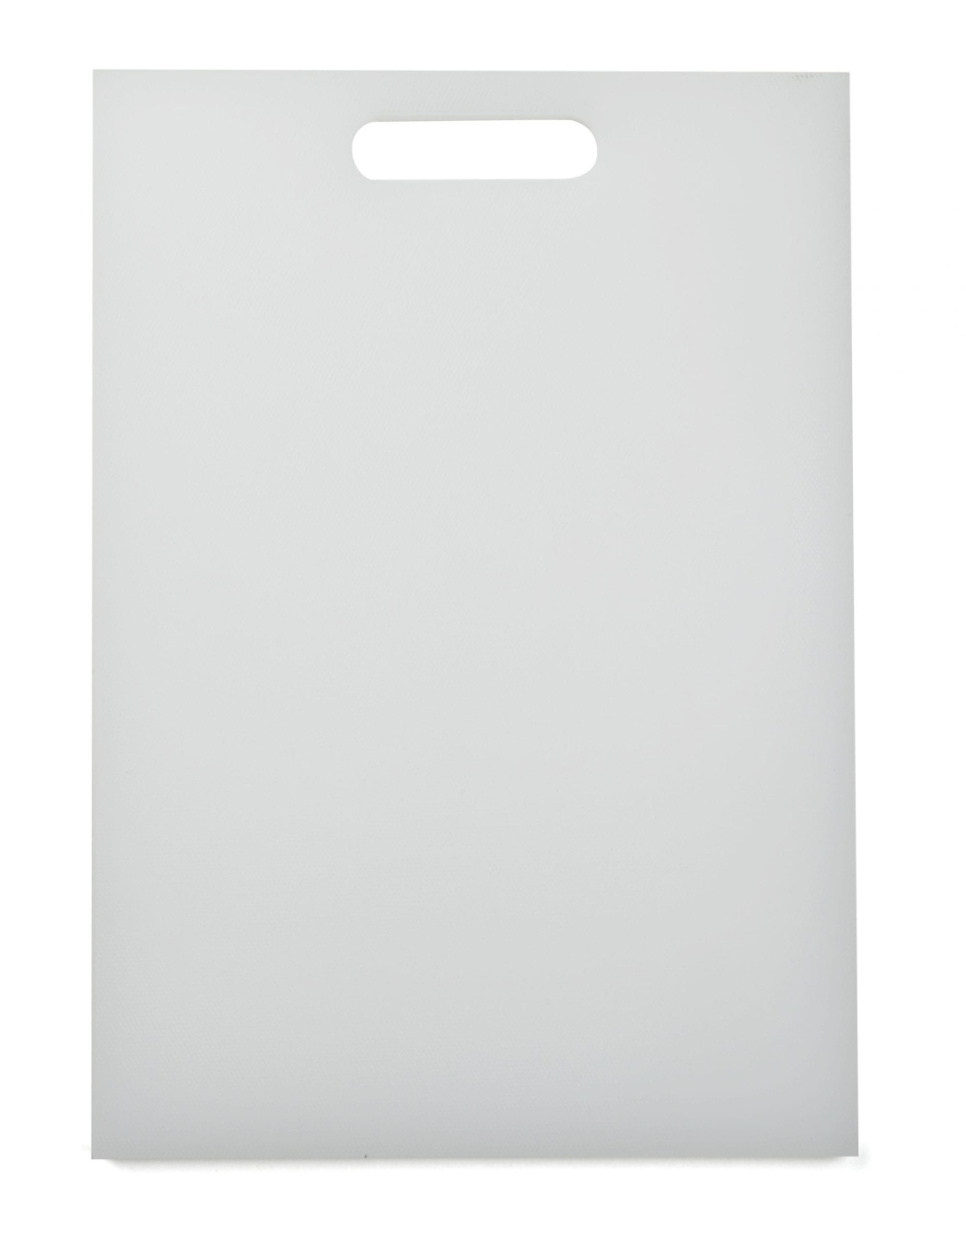 Skärbräda vit, 35 x 26 cm - Exxent i gruppen Matlagning / Köksredskap / Skärbrädor hos KitchenLab (1071-10194)